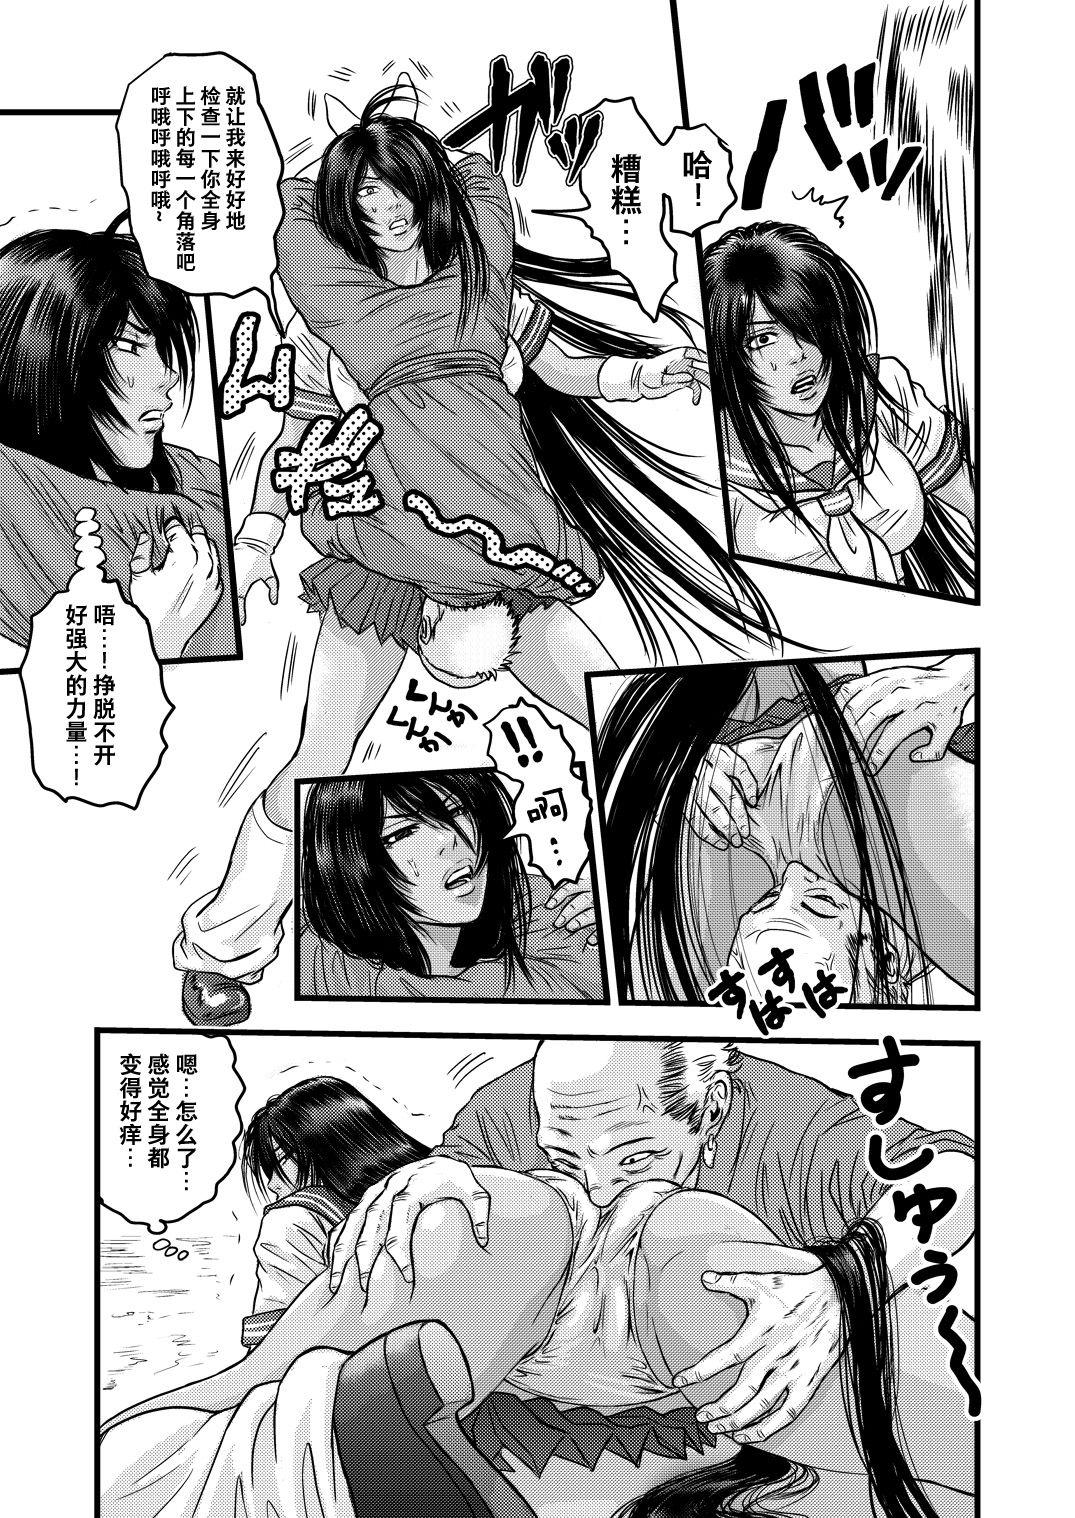 This 黒髪の不覚 其の一 - Ikkitousen | battle vixens Realitykings - Page 8